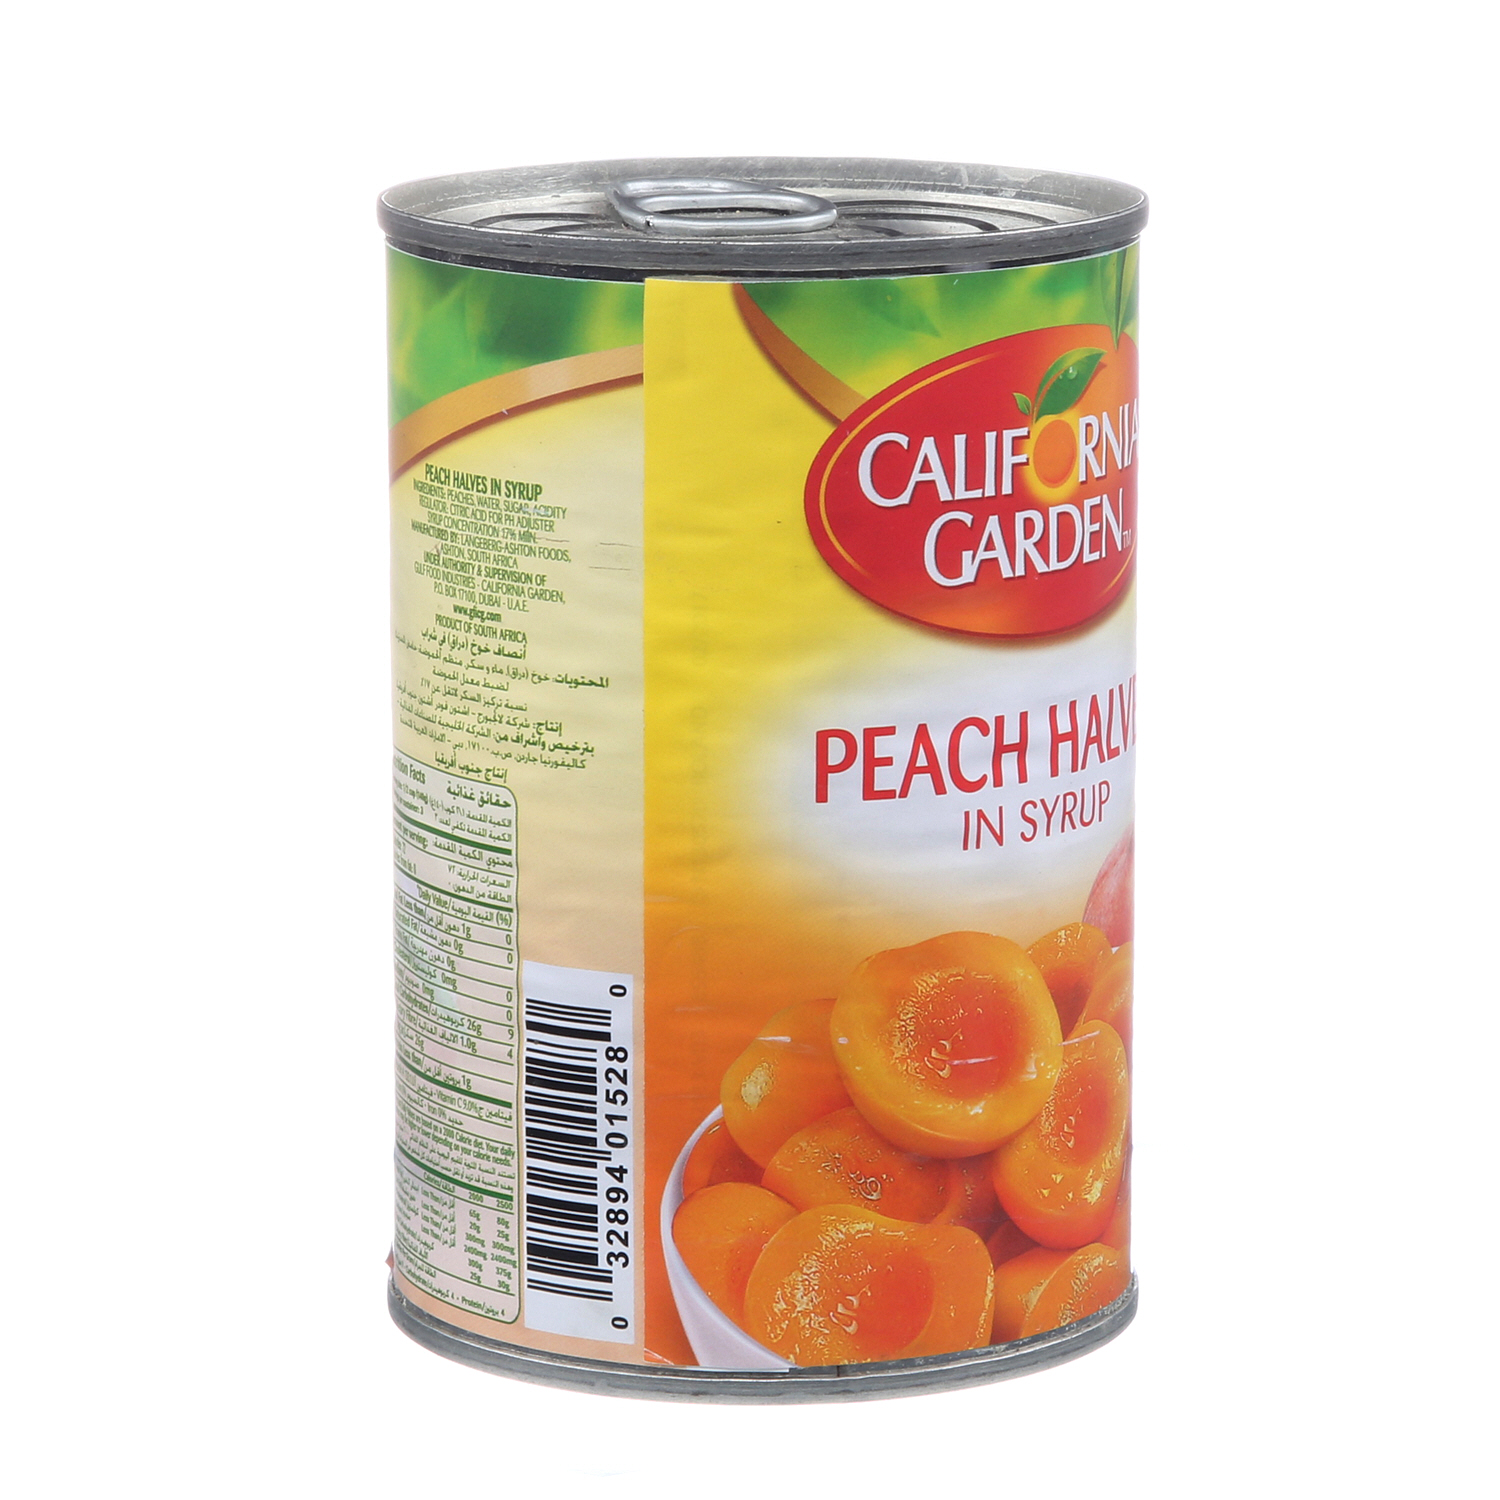 California Garden Peach Halves 420gm